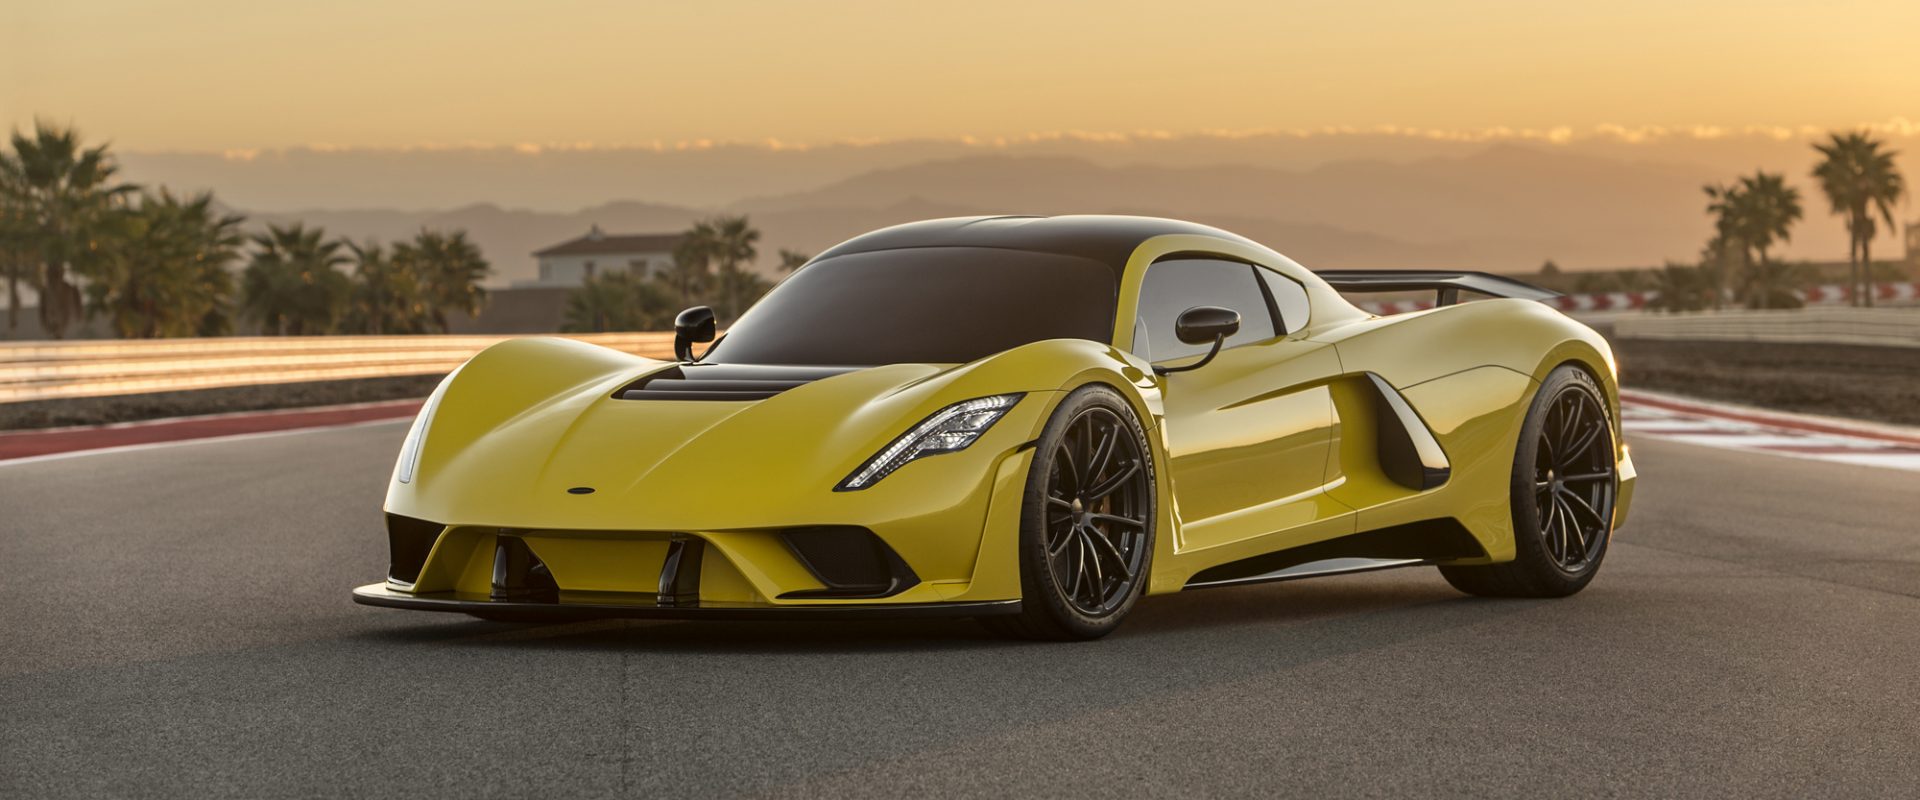 Venom GT – O superesportivo mais rápido do mundo